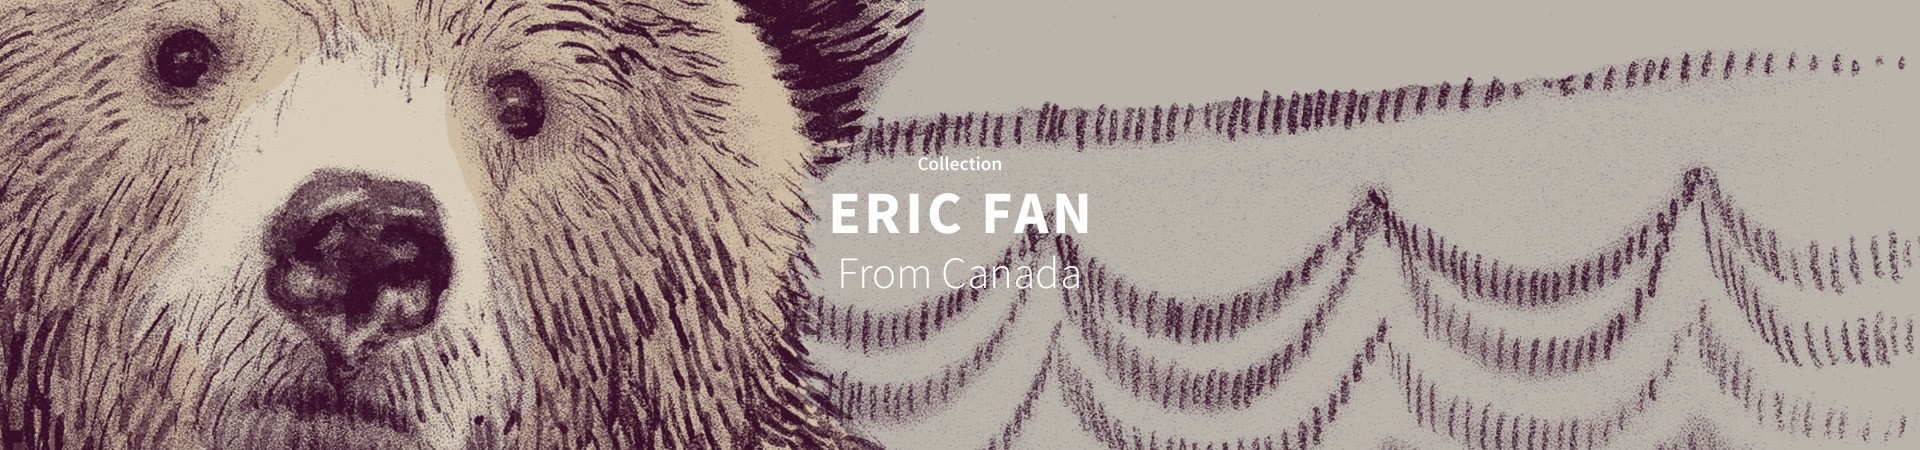 Eric Fan